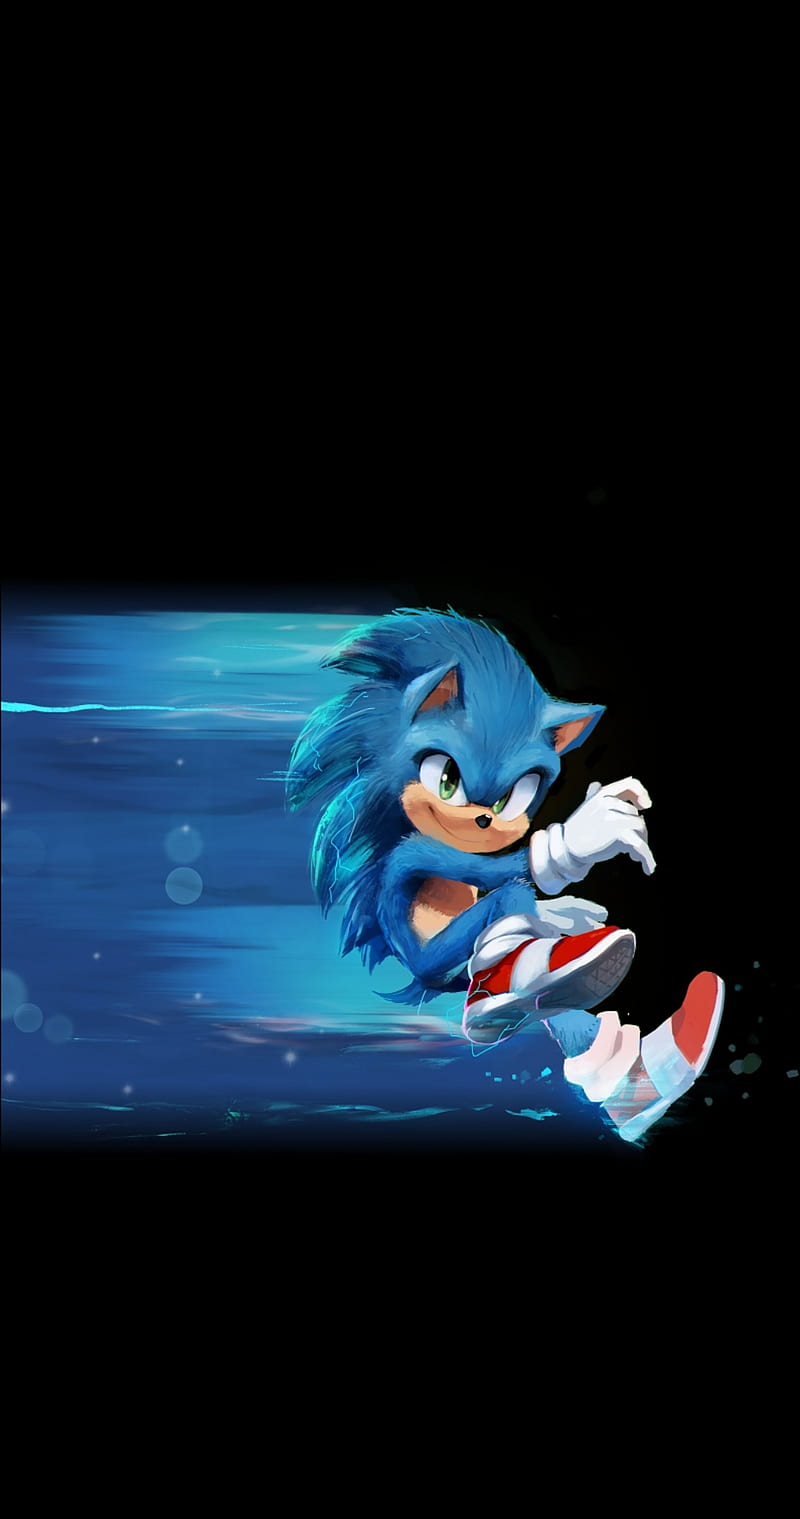 Imagens do filme Sonic 2 - 04/04/2022 - F5 - Fotografia - Folha de S.Paulo